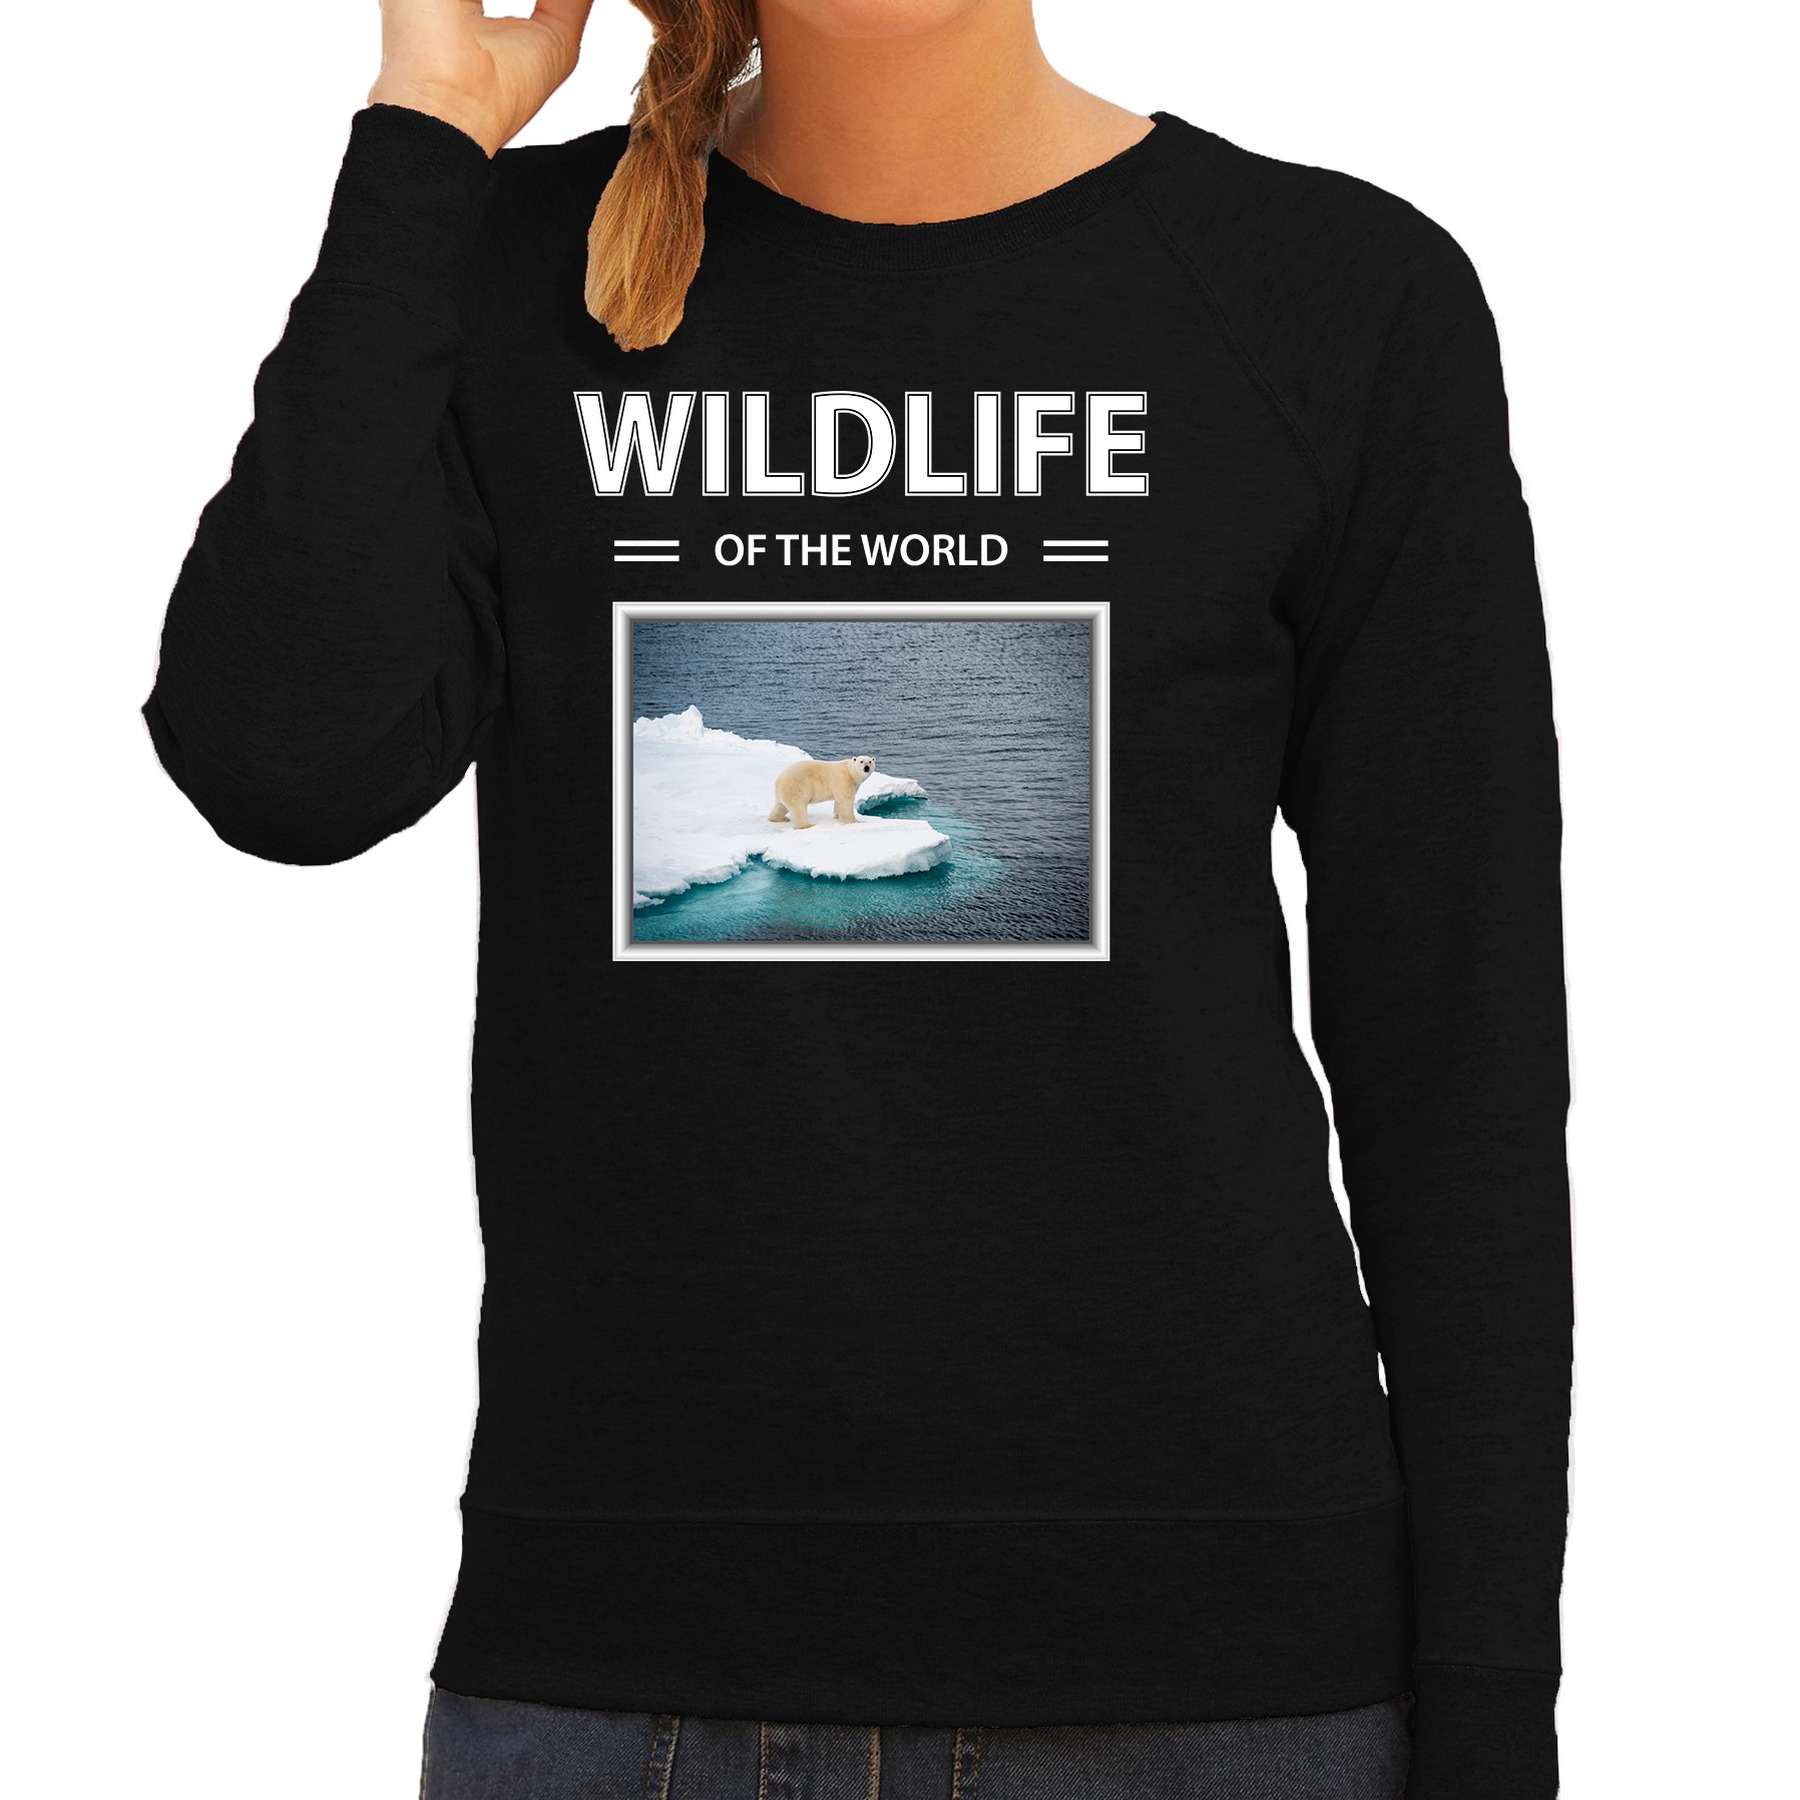 Ijsbeer sweater / trui met dieren foto wildlife of the world zwart voor dames